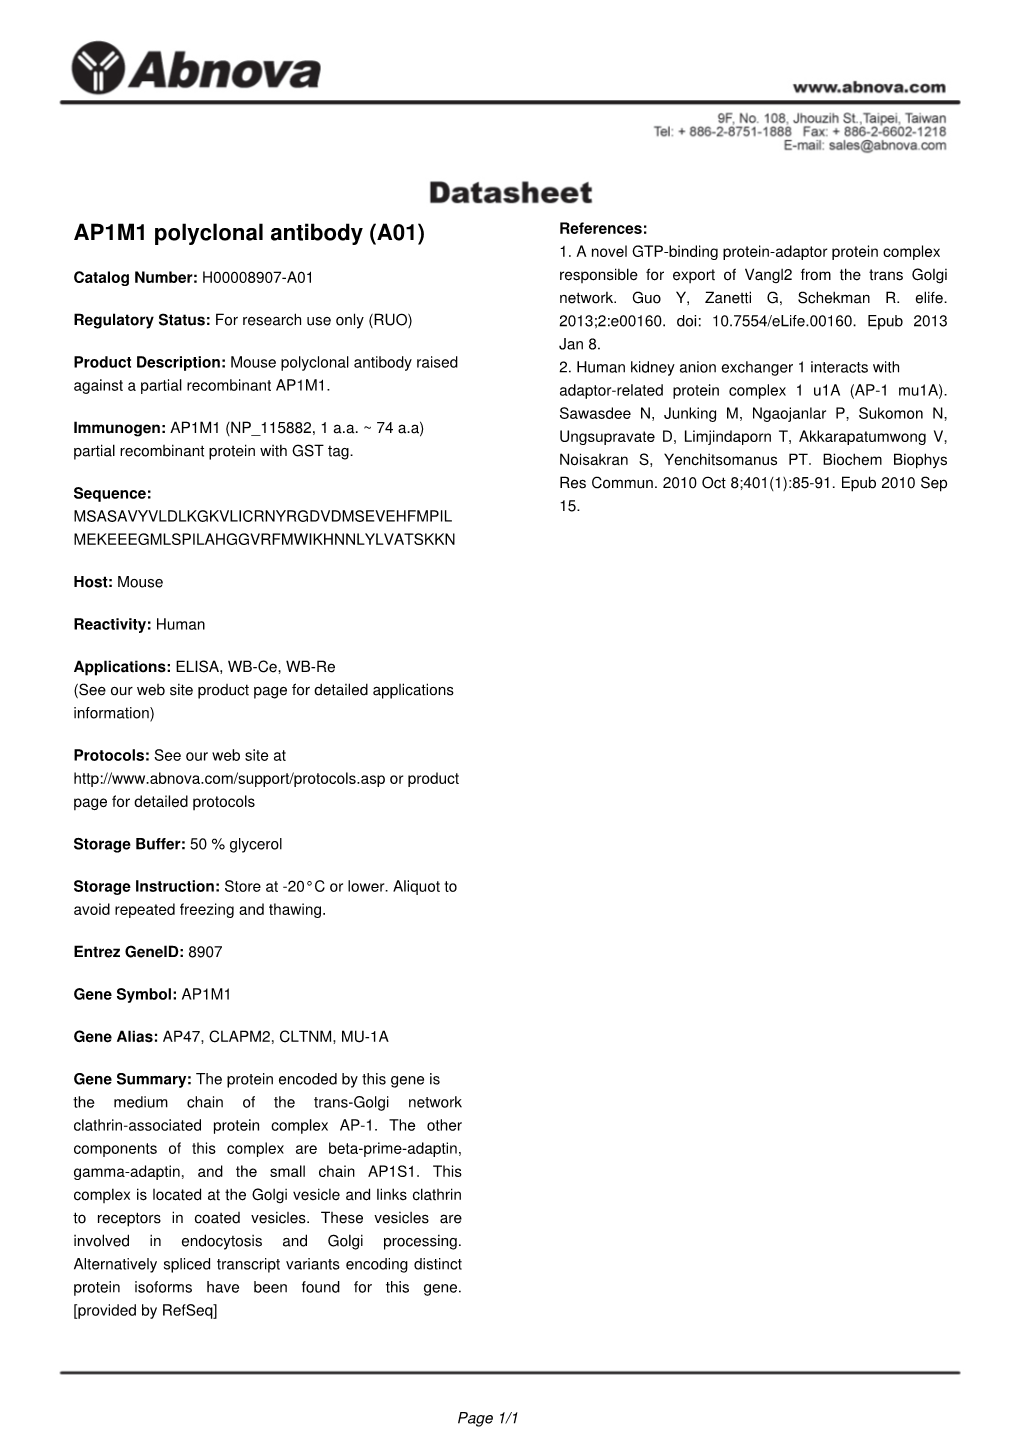 AP1M1 Polyclonal Antibody (A01) References: 1